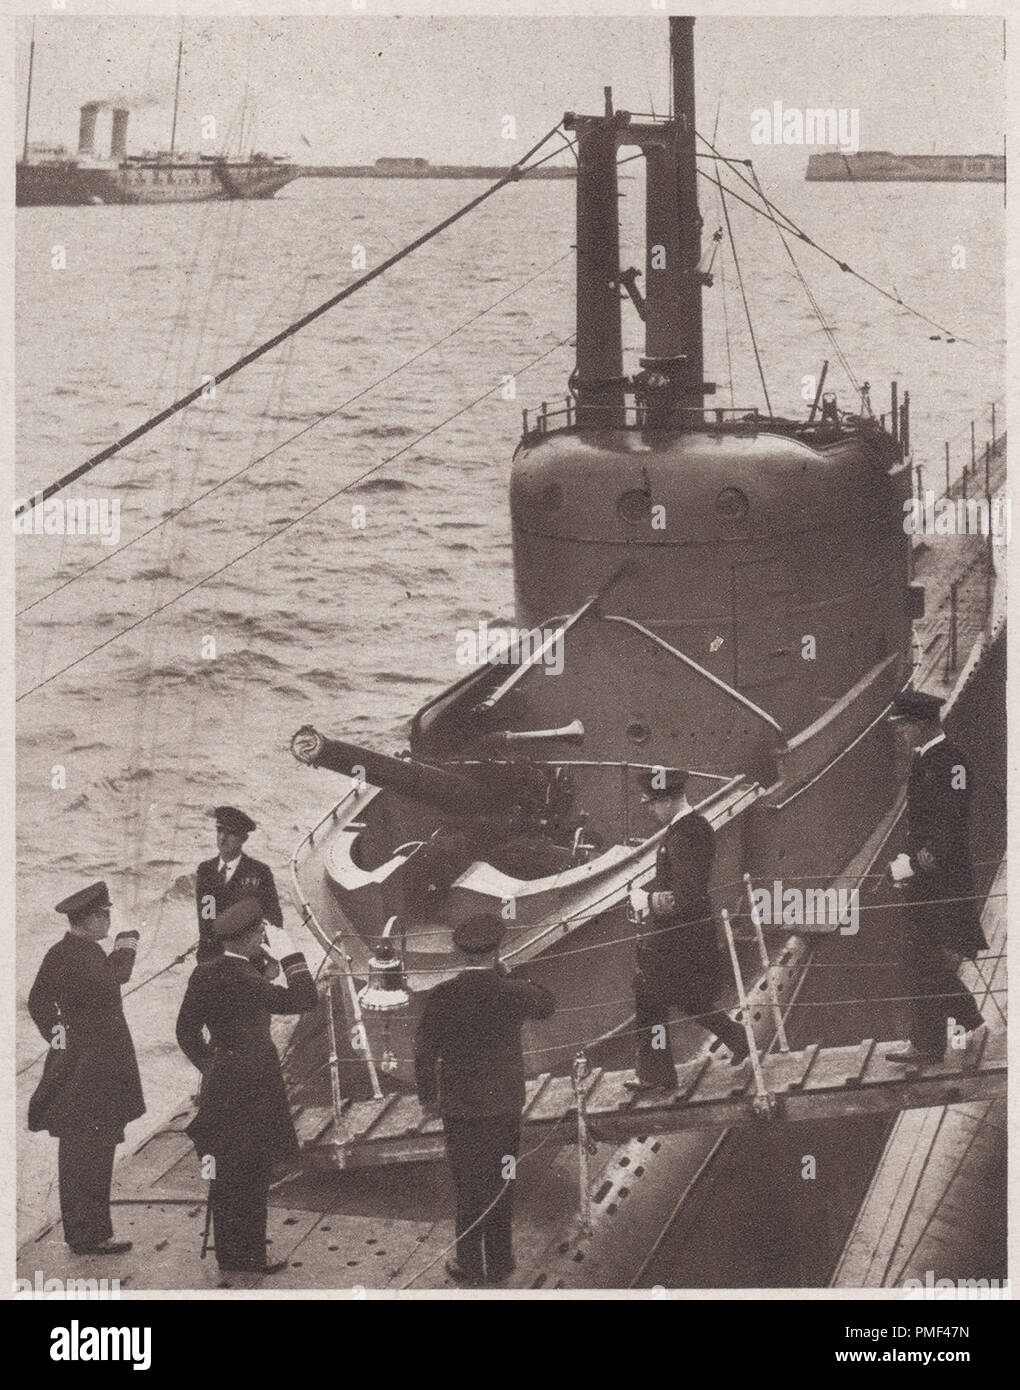 Edward der Achte in 1936 an Bord des U-Boots HMS Narwhal (N 45) ein grampus Klasse Mine mit U-Boot der Royal Navy. HMS Narwhal wurde später in der Nordsee am 23. Juli 1940 gesunken. Edward VIII. Später dankte den Thron nach Wallis Simpson die Amerikanische geschiedene socialite zu heiraten Stockfoto